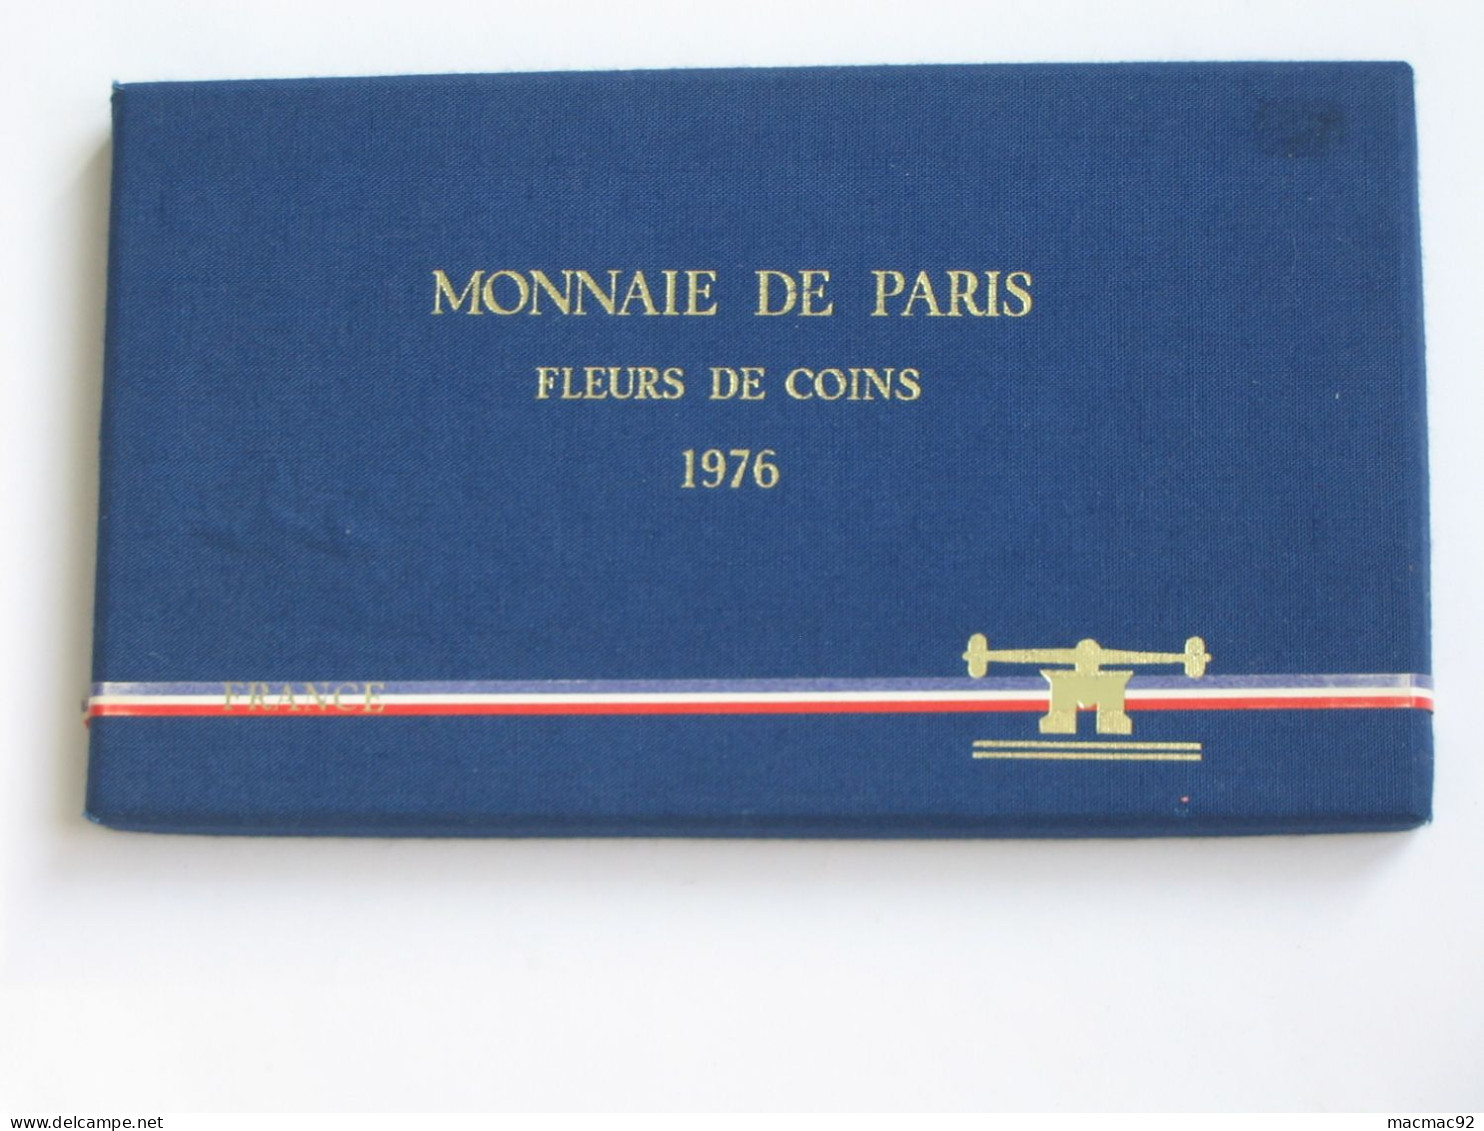 Coffret Série FLEURS DE COINS 1976   **** EN ACHAT IMMEDIAT   **** - BU, BE & Coffrets